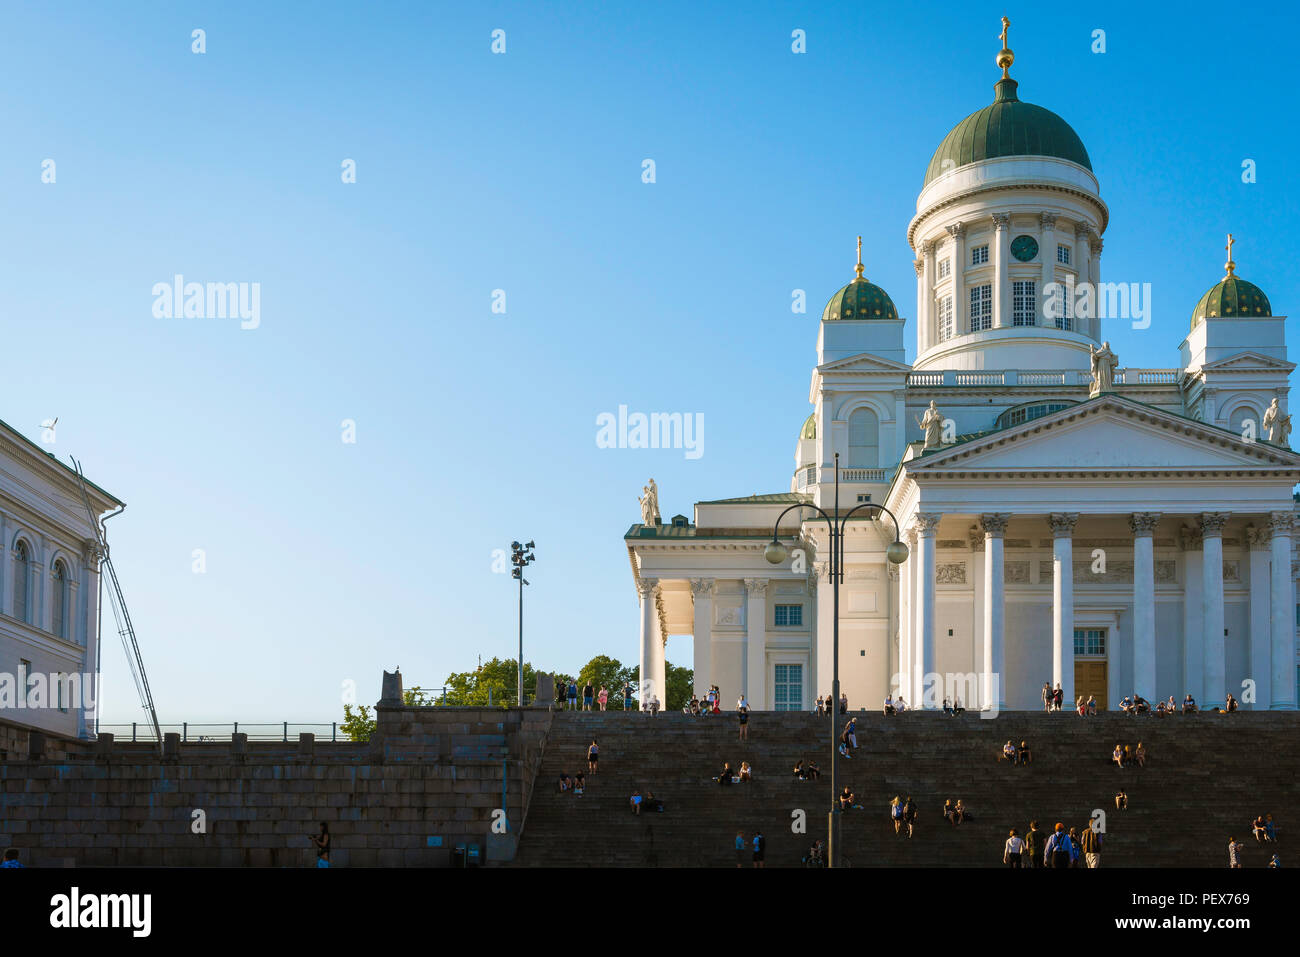 Tourisme La Finlande l'été, au coucher du soleil Vue de la cathédrale luthérienne d'Helsinki avec les touristes assis sur ordre croissant ou le grand escalier à l'entrée. Banque D'Images